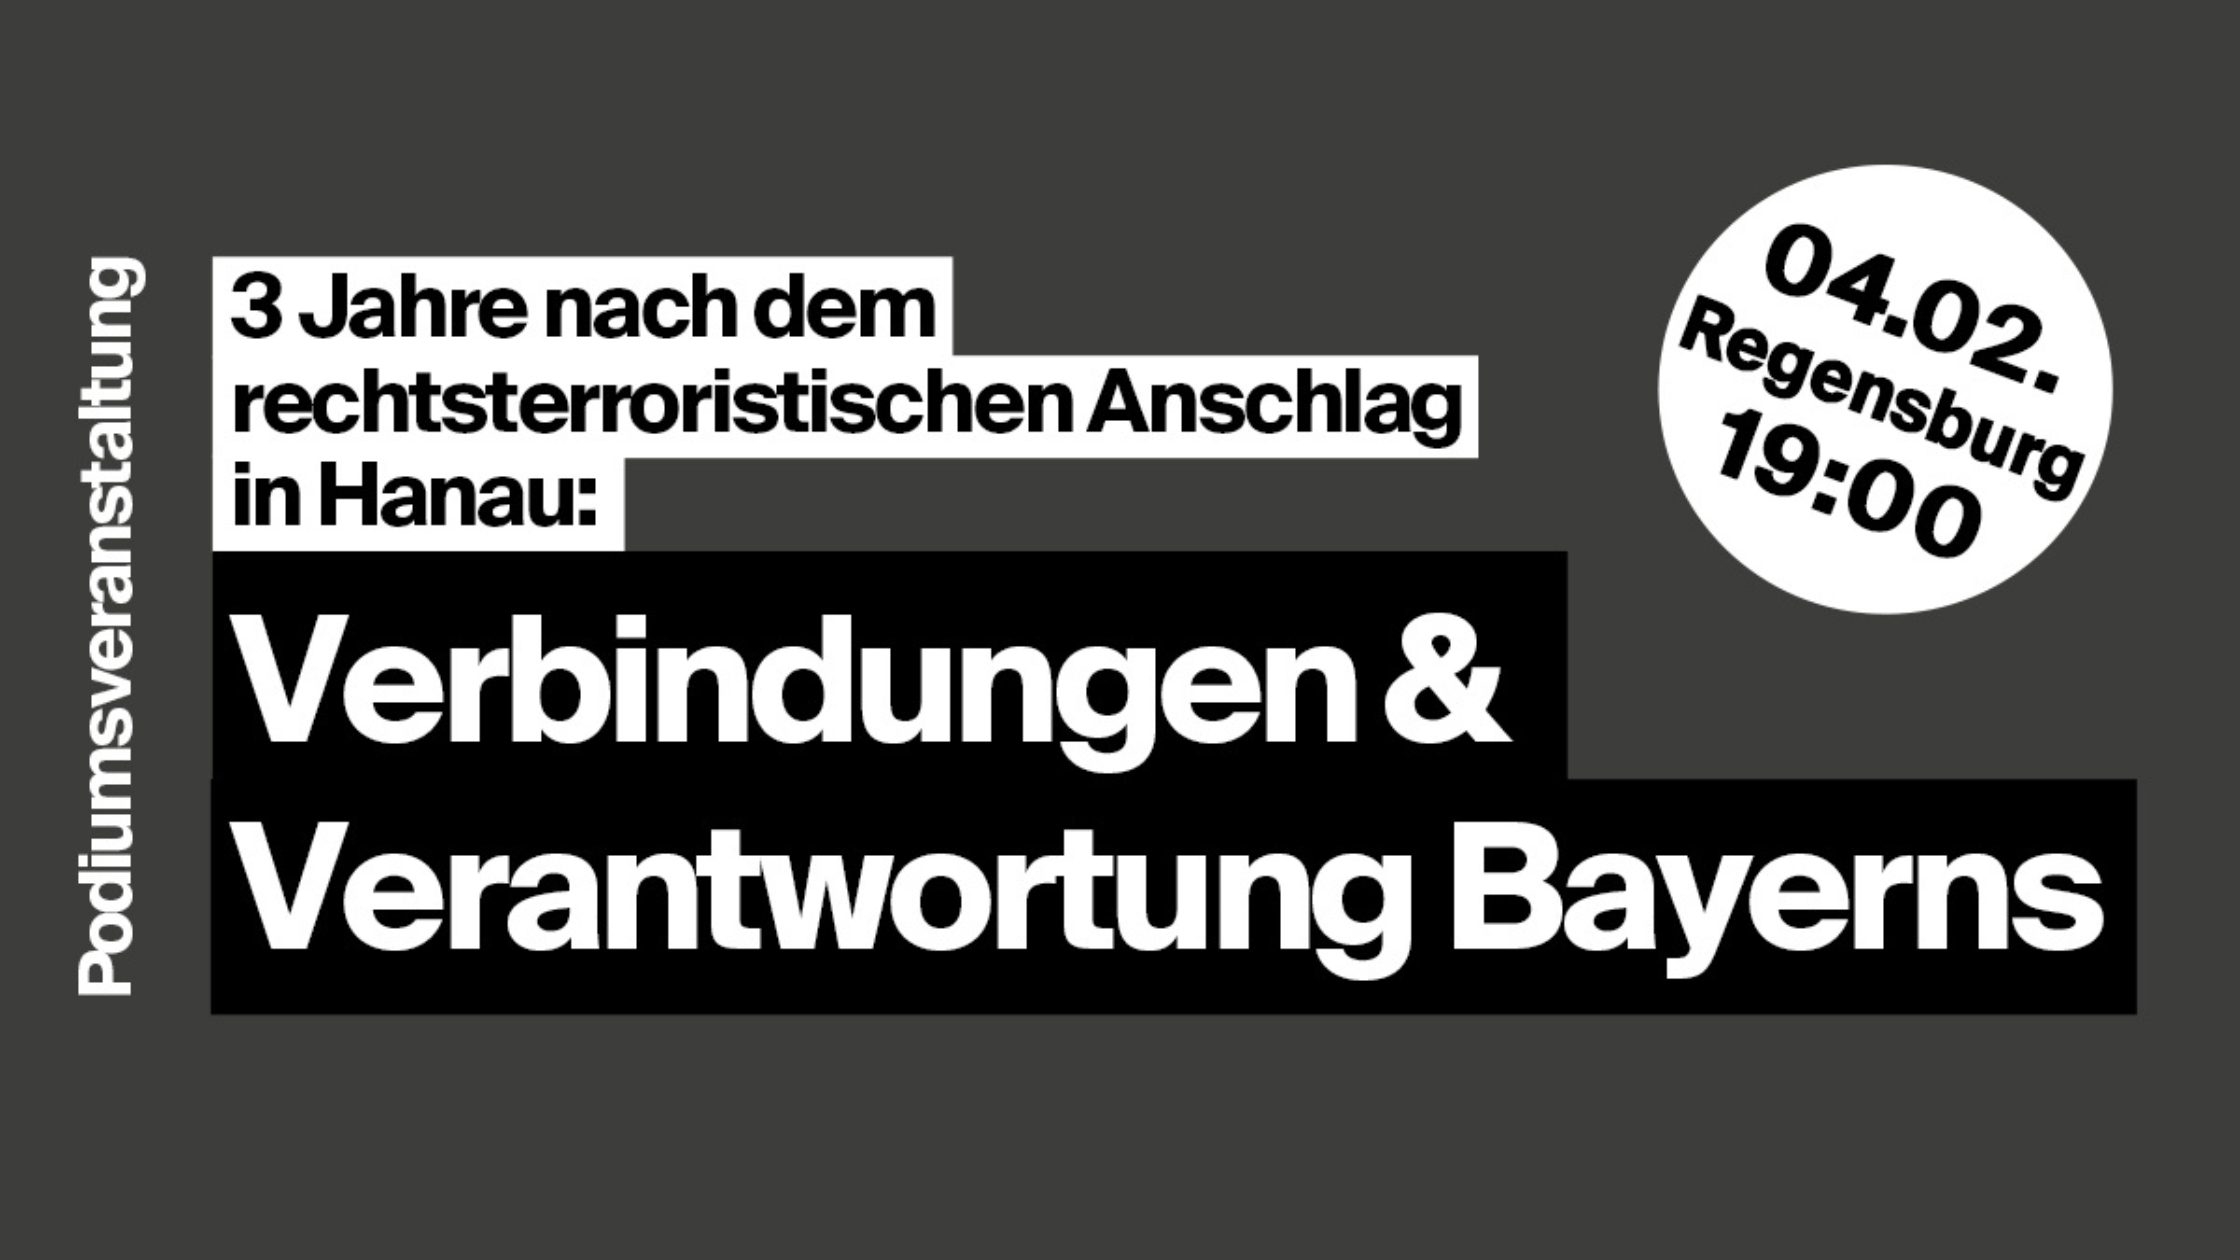 Podiumsdiskussion: "3 Jahre nach dem rechtsterroristischen Anschlag in Hanau: Verbindungen & Verantwortung Bayerns", 04.02., 19:00 Uhr, Regensburg